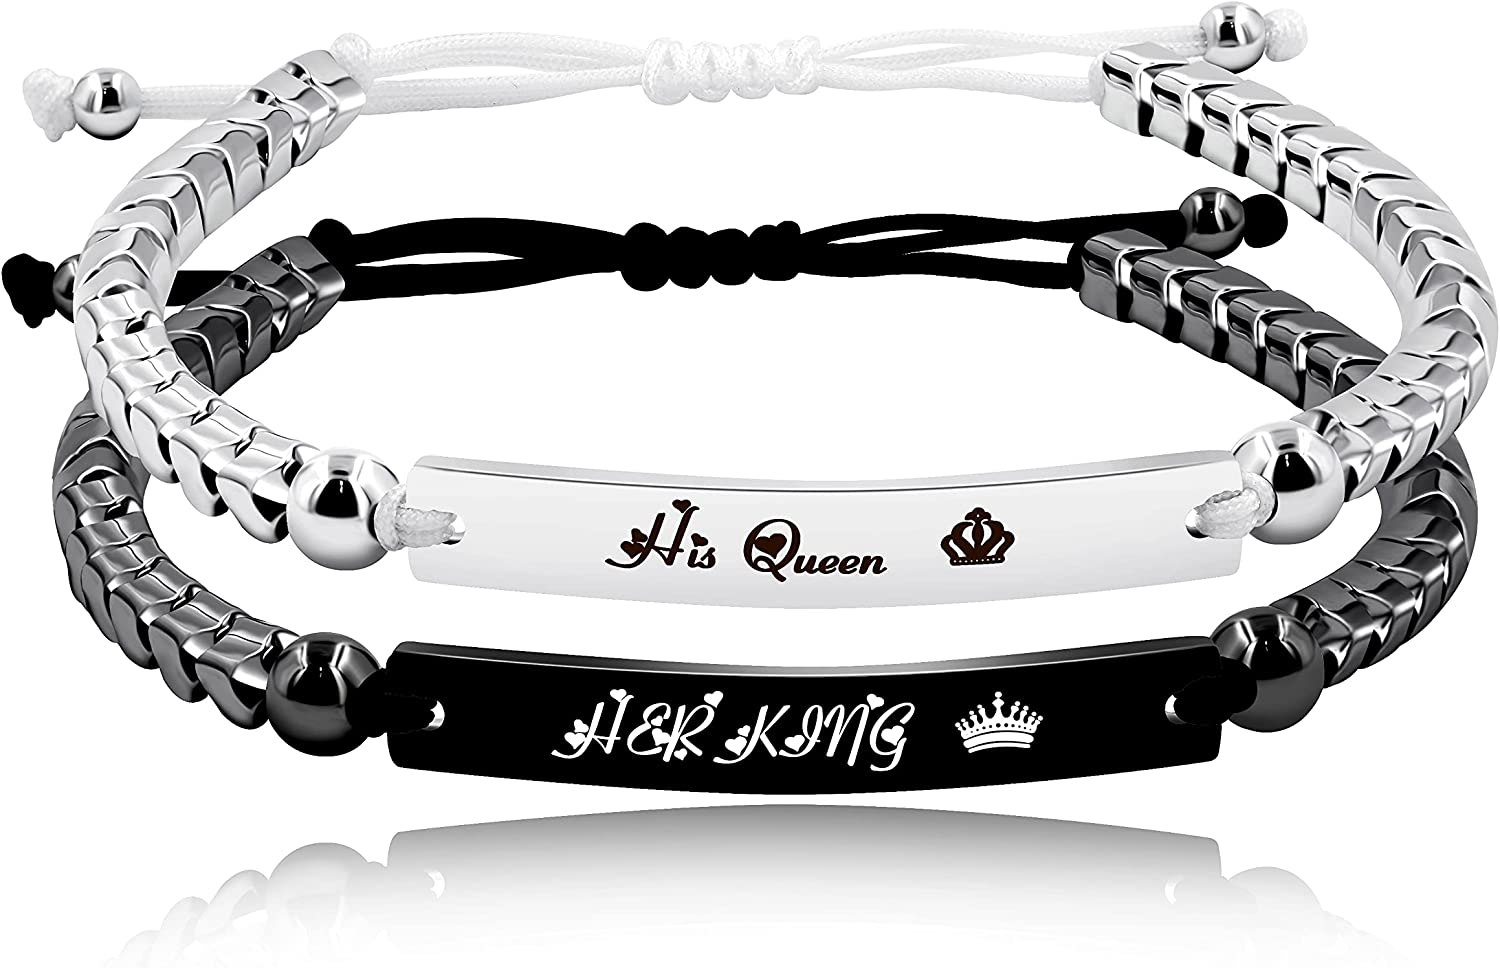 Handmade Gear Shape Hematite Beads Custom Engraved Name Bracelets for Men Women Couples Y1458 (BlackHerKing-WhiteHisQueen), 2 BlackHerKing-WhiteHisQueen